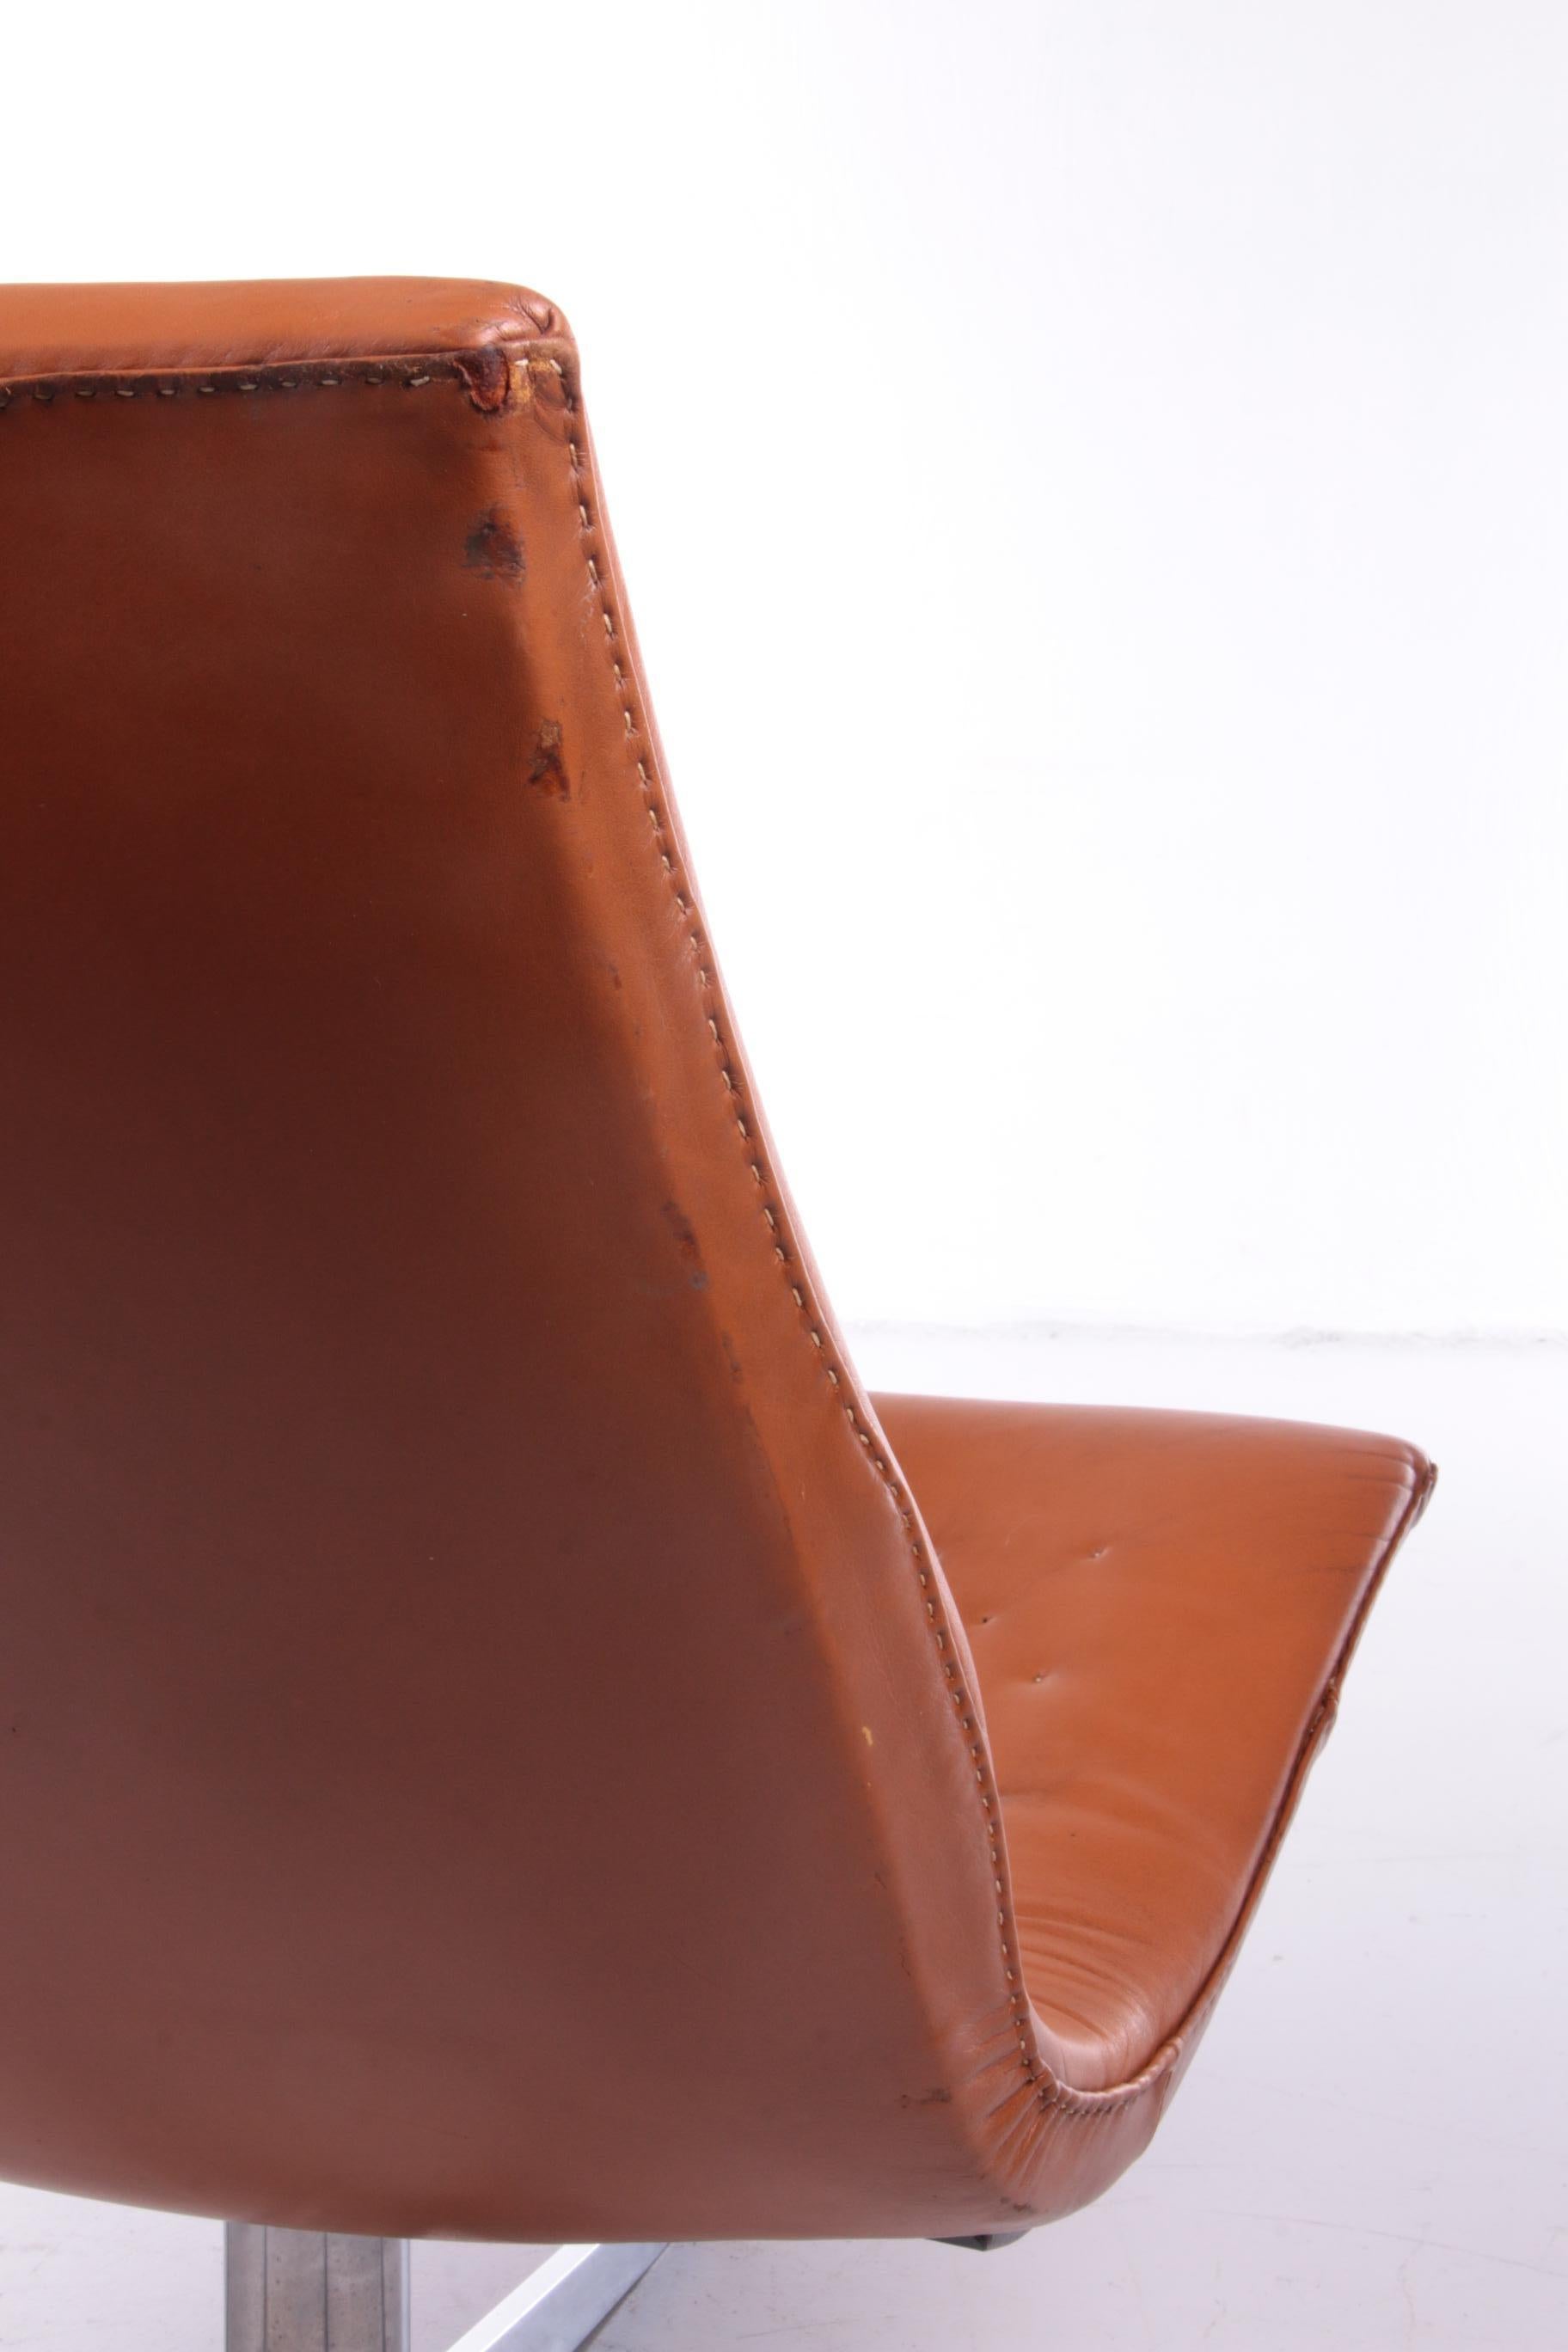 Lounge Chair De Sede Model DS-51 Cognac Color Leather Switzerland For Sale 5